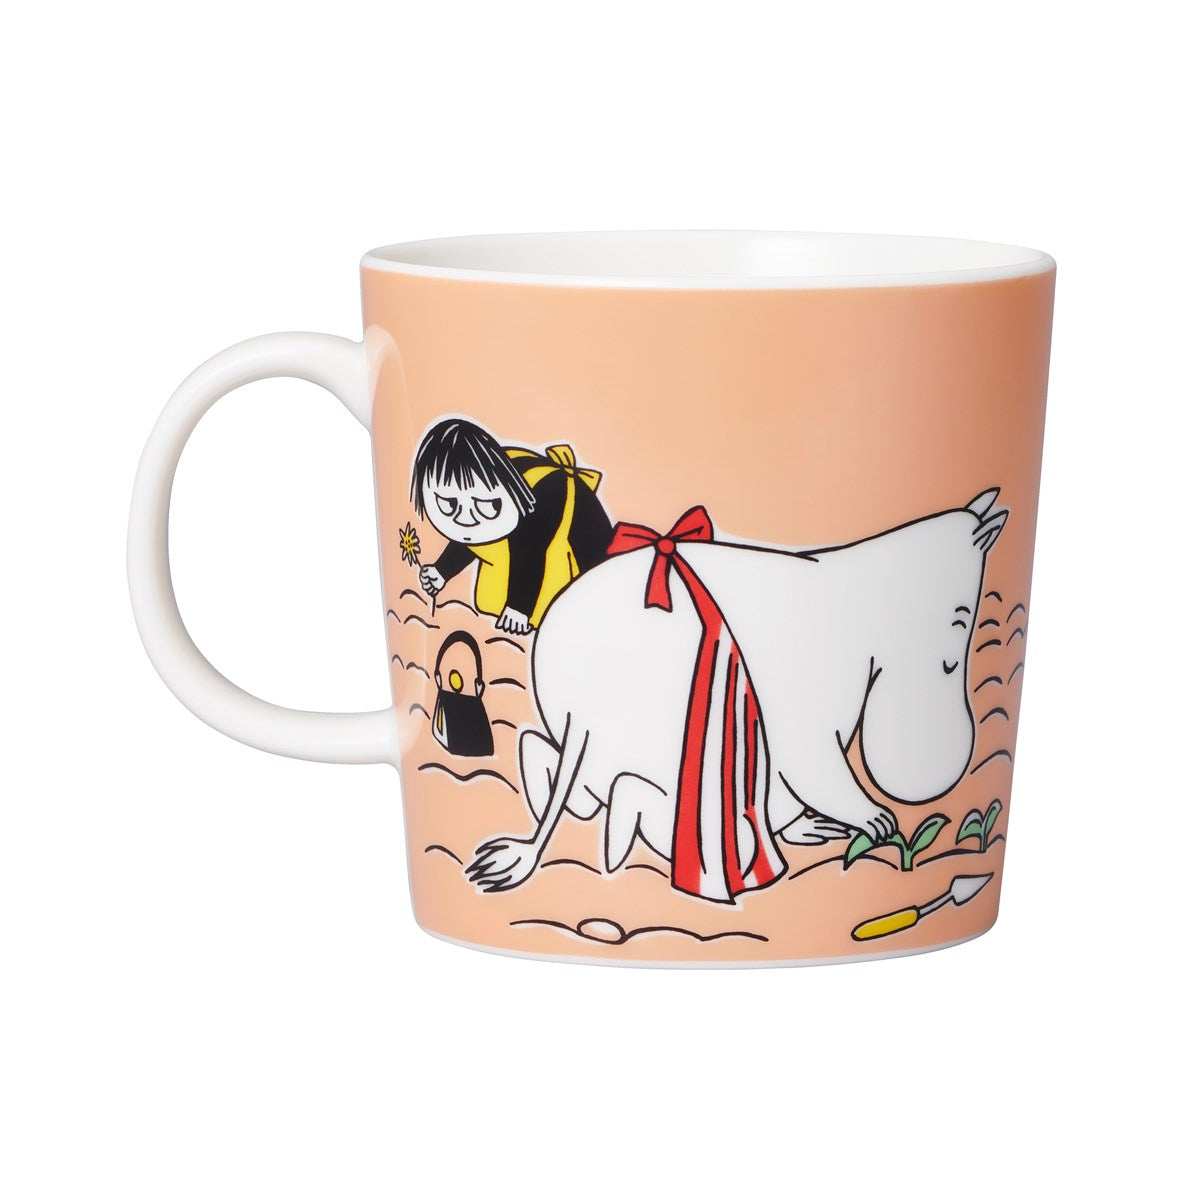 Moomin Arabia / iittala mug 300ml  / 10oz  Moominmamma Marmalade mug